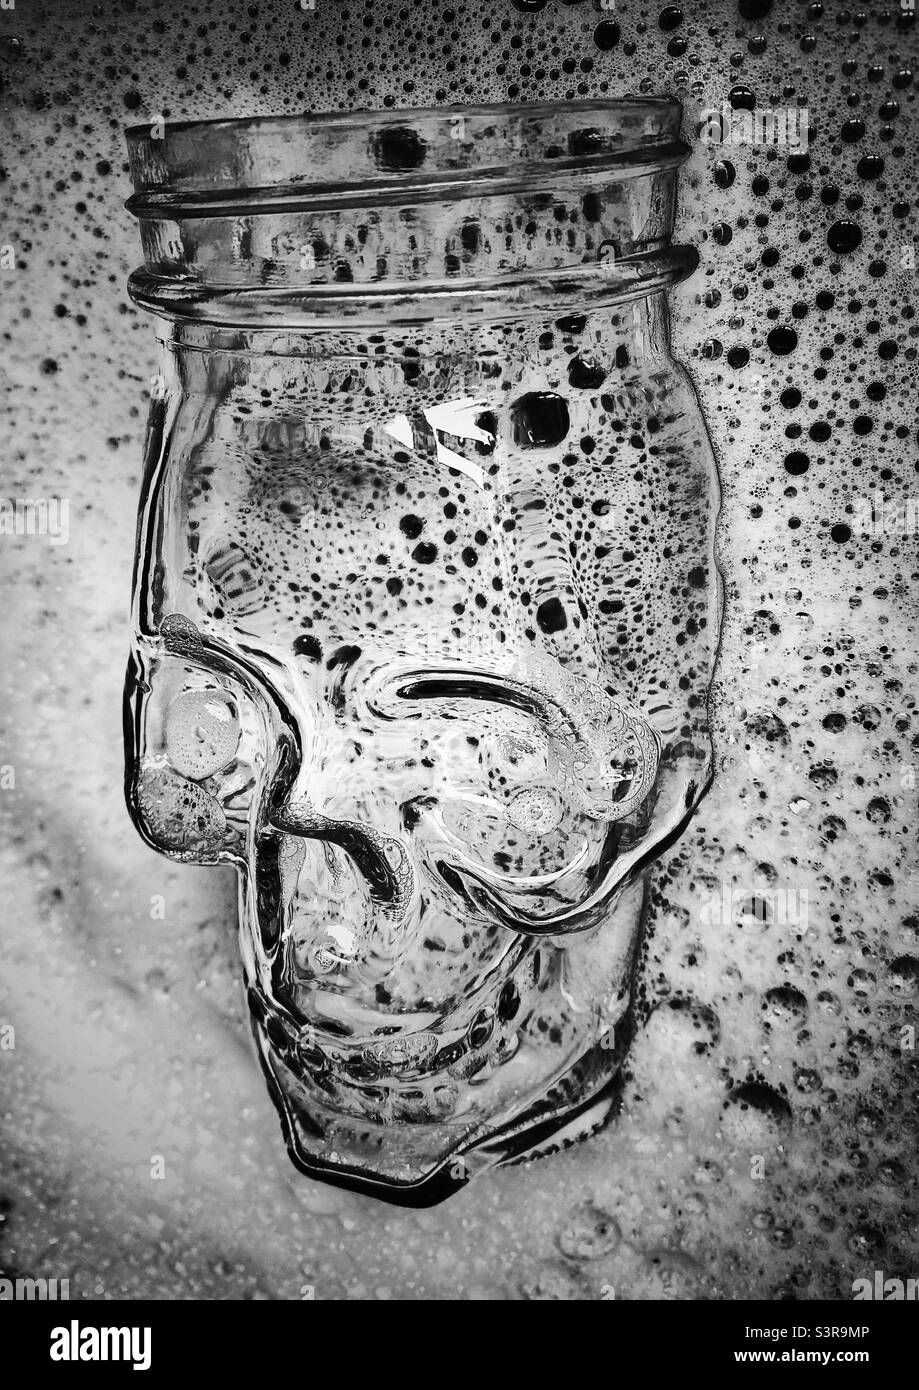 Une photographie en noir et blanc d'un pot en verre en forme de crâne dans un bol d'eau savonneuse Banque D'Images